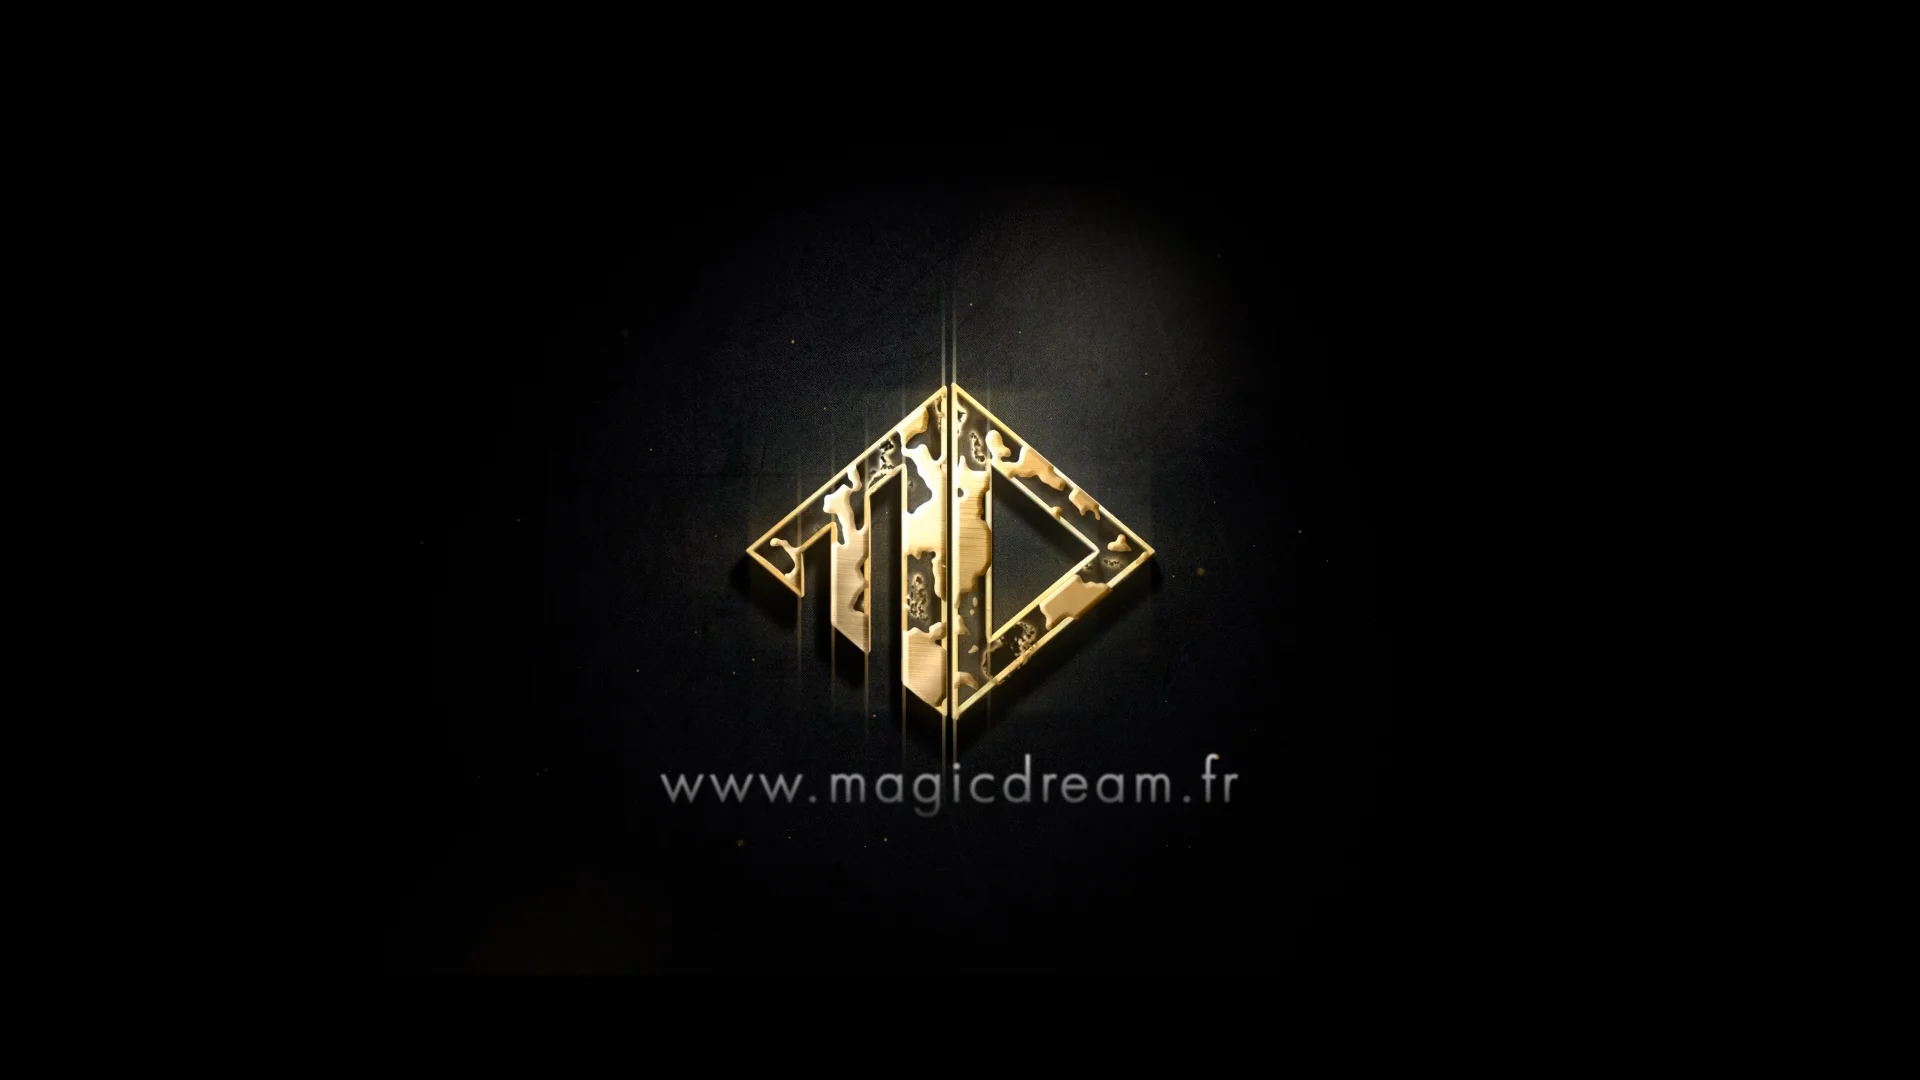 Tour : Le Jeu Infini ou Radio - Les Clefs de la Magie - Magic Dream